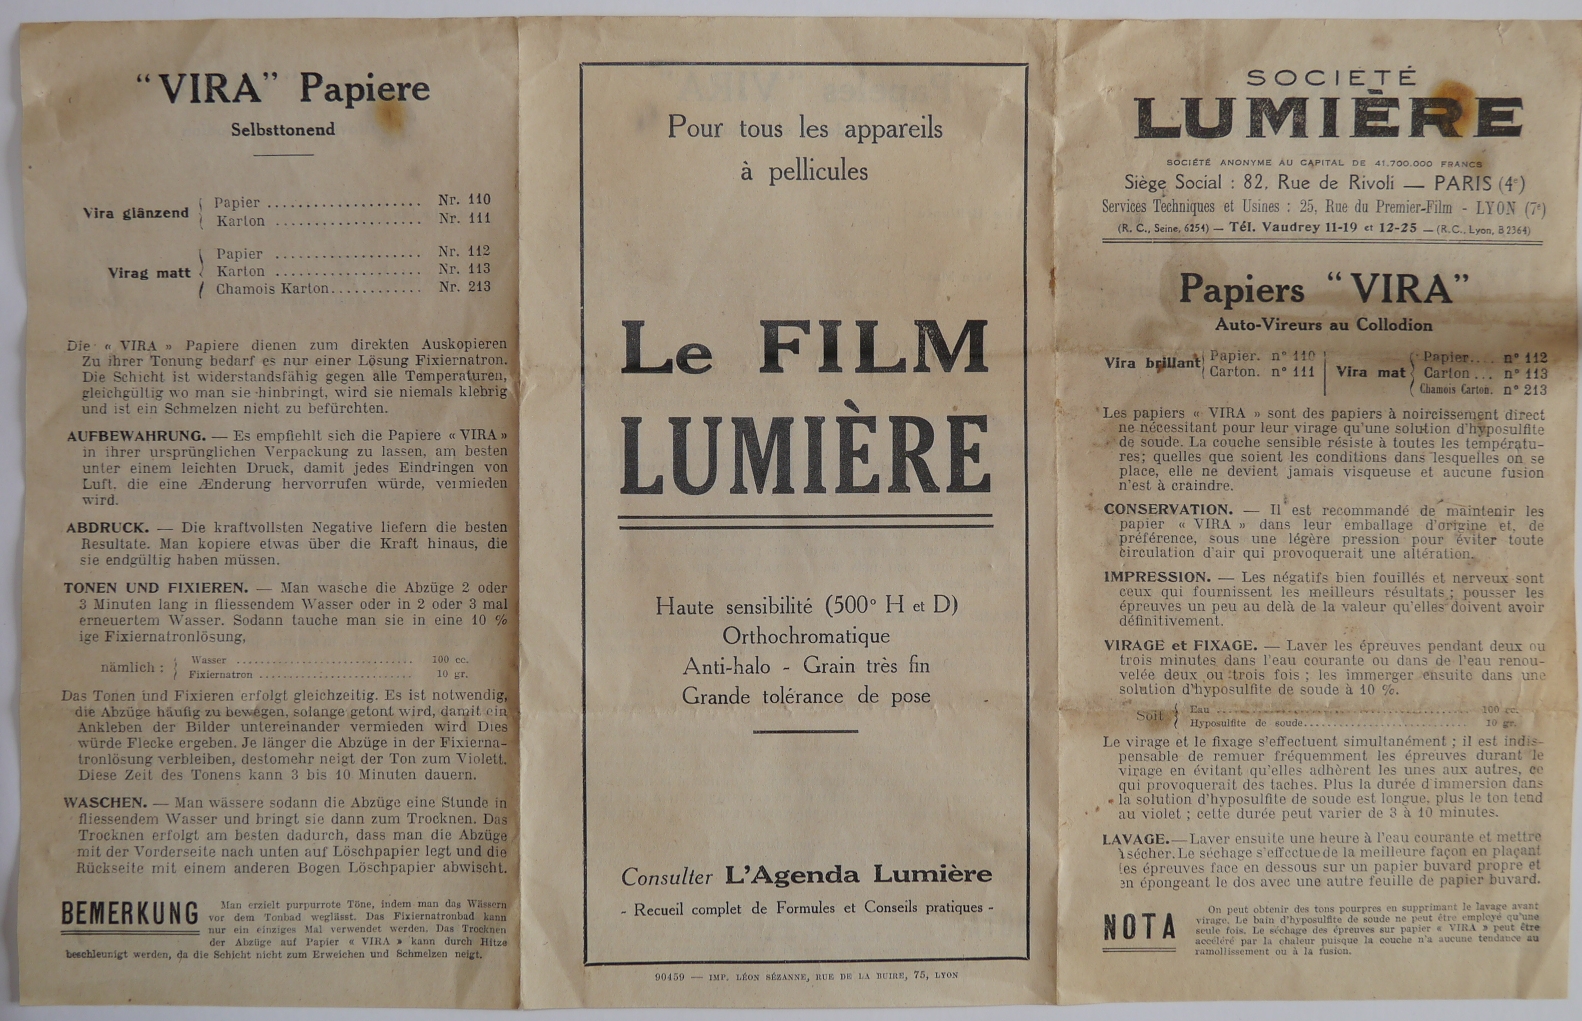 Société Lumière - Notice du Papier Vira